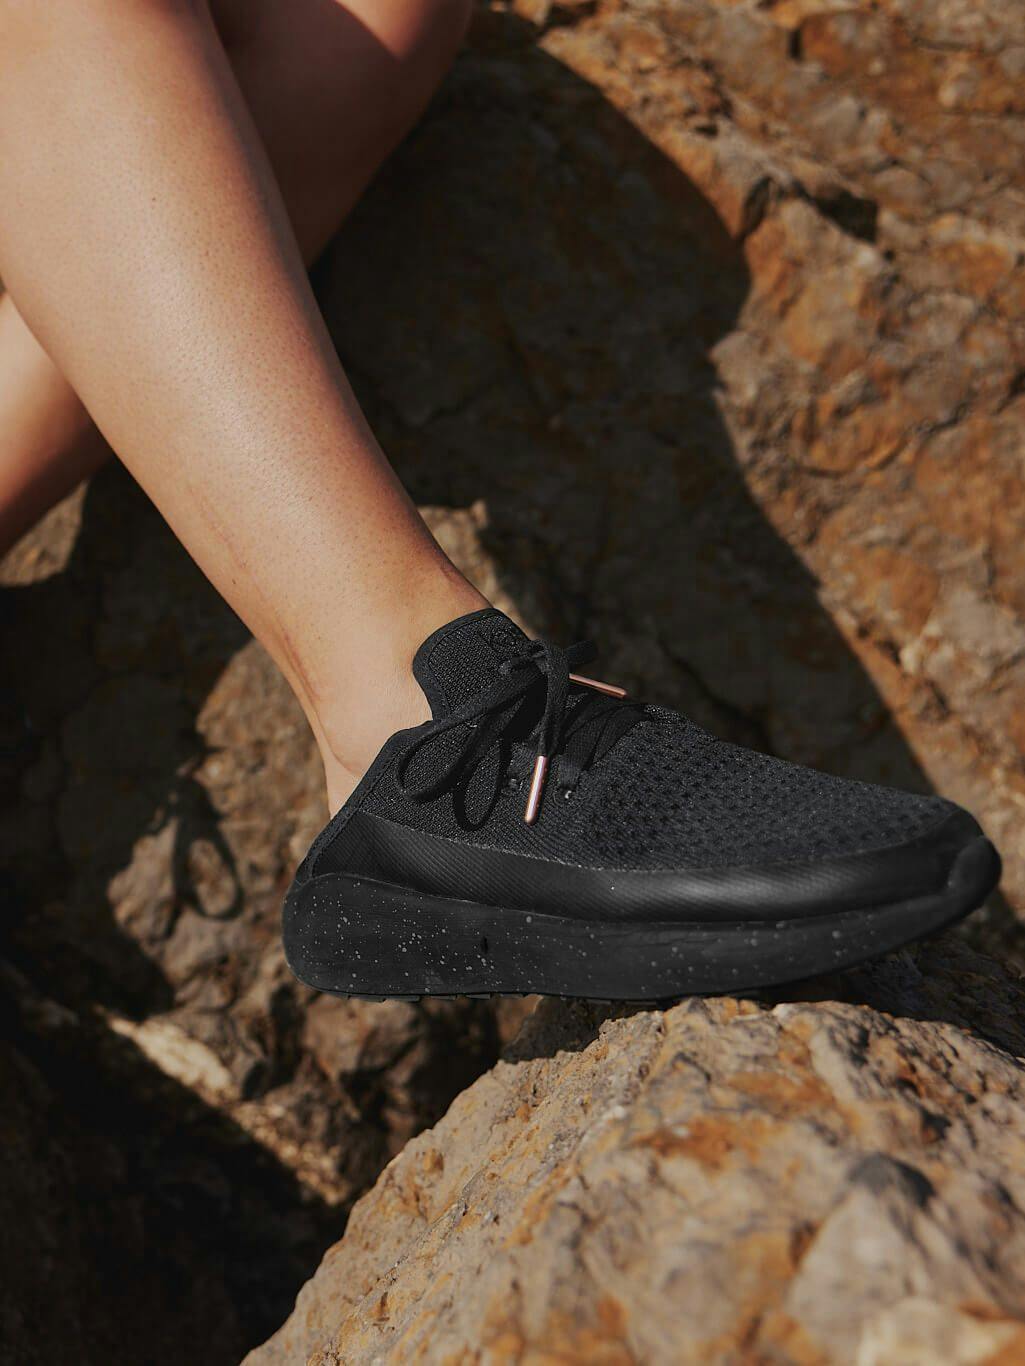 Fleksibel og funksjonell, disse skoene er designet for å følge deg gjennom alle sommeraktiviteter. Bruk dem som klassiske sneakers eller tråkk ned hælen for et enkelt slip-on alternativ.